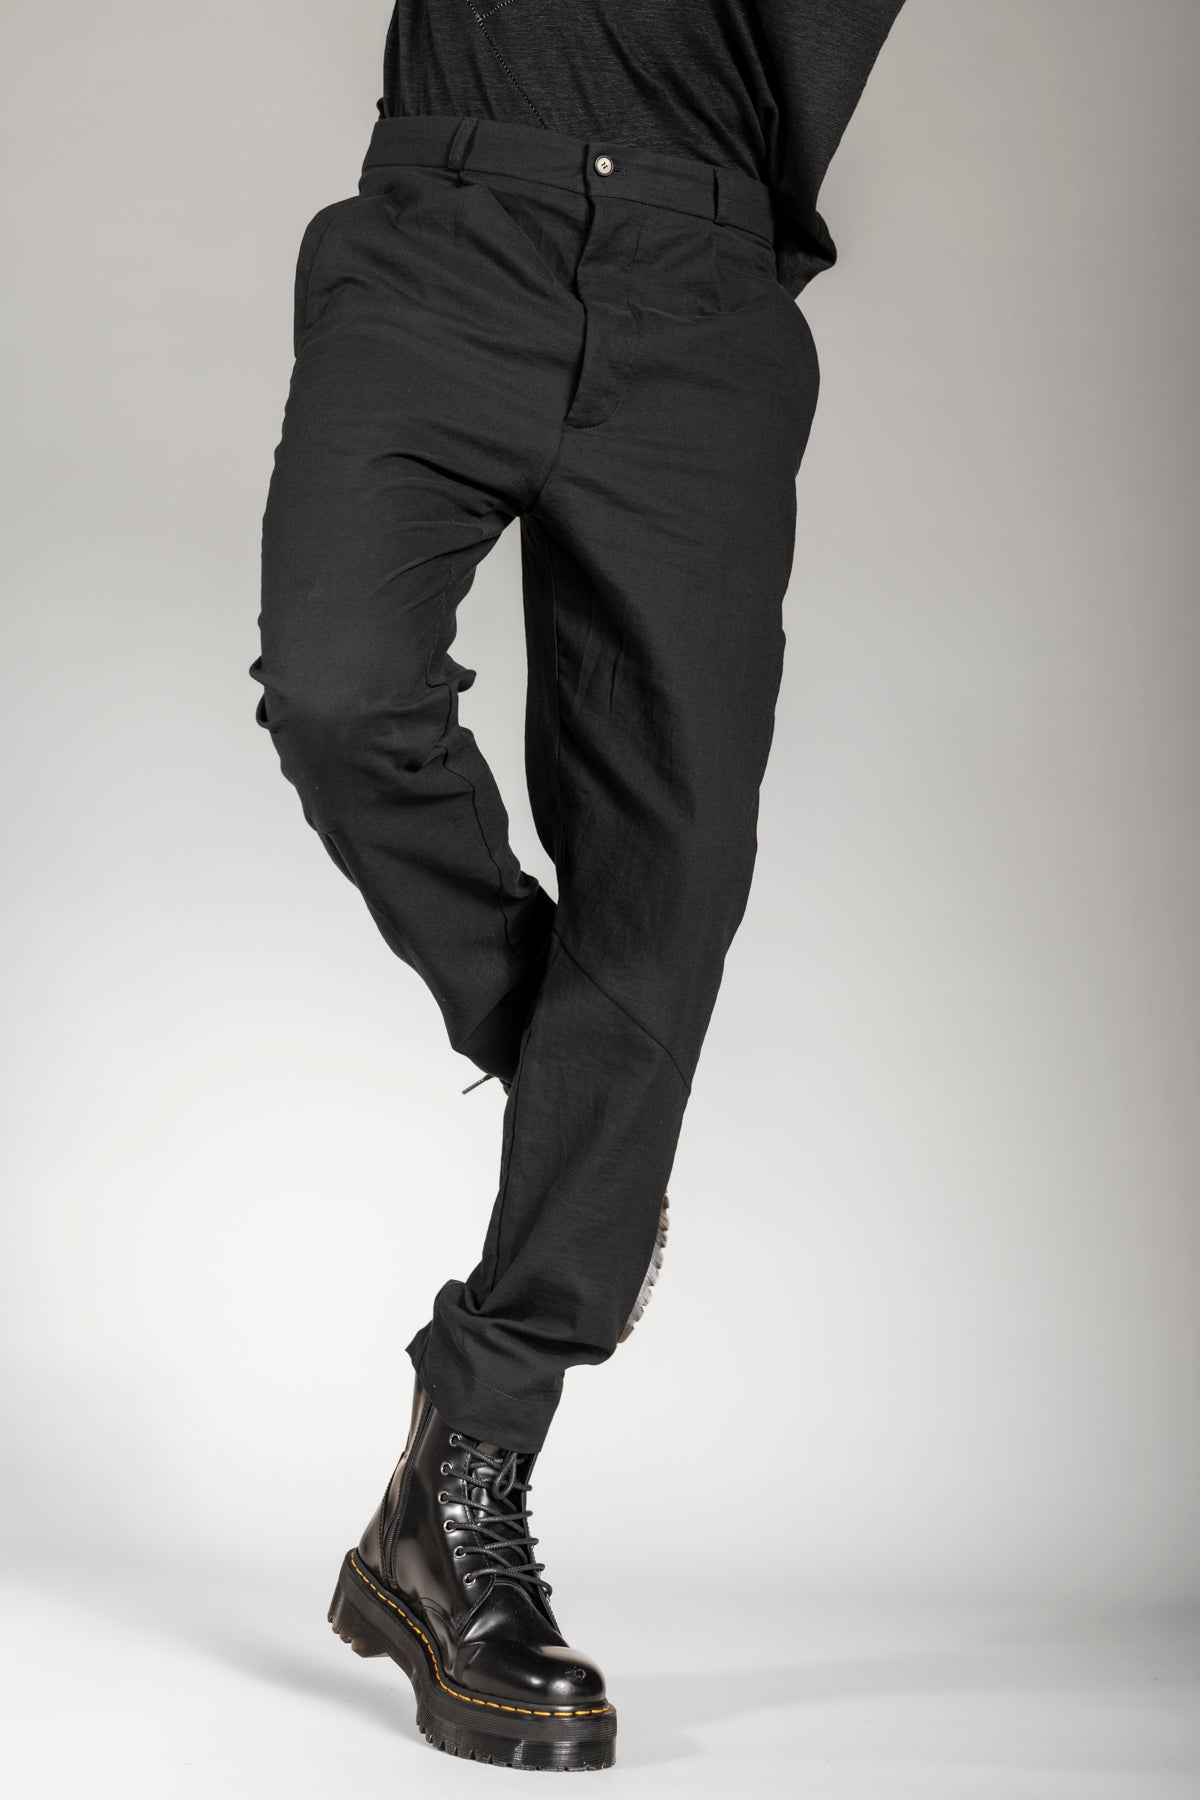 eigensinnig wien | MisMei | Designer All Black Anzug für Herren aus hochwertiger Baumwolle